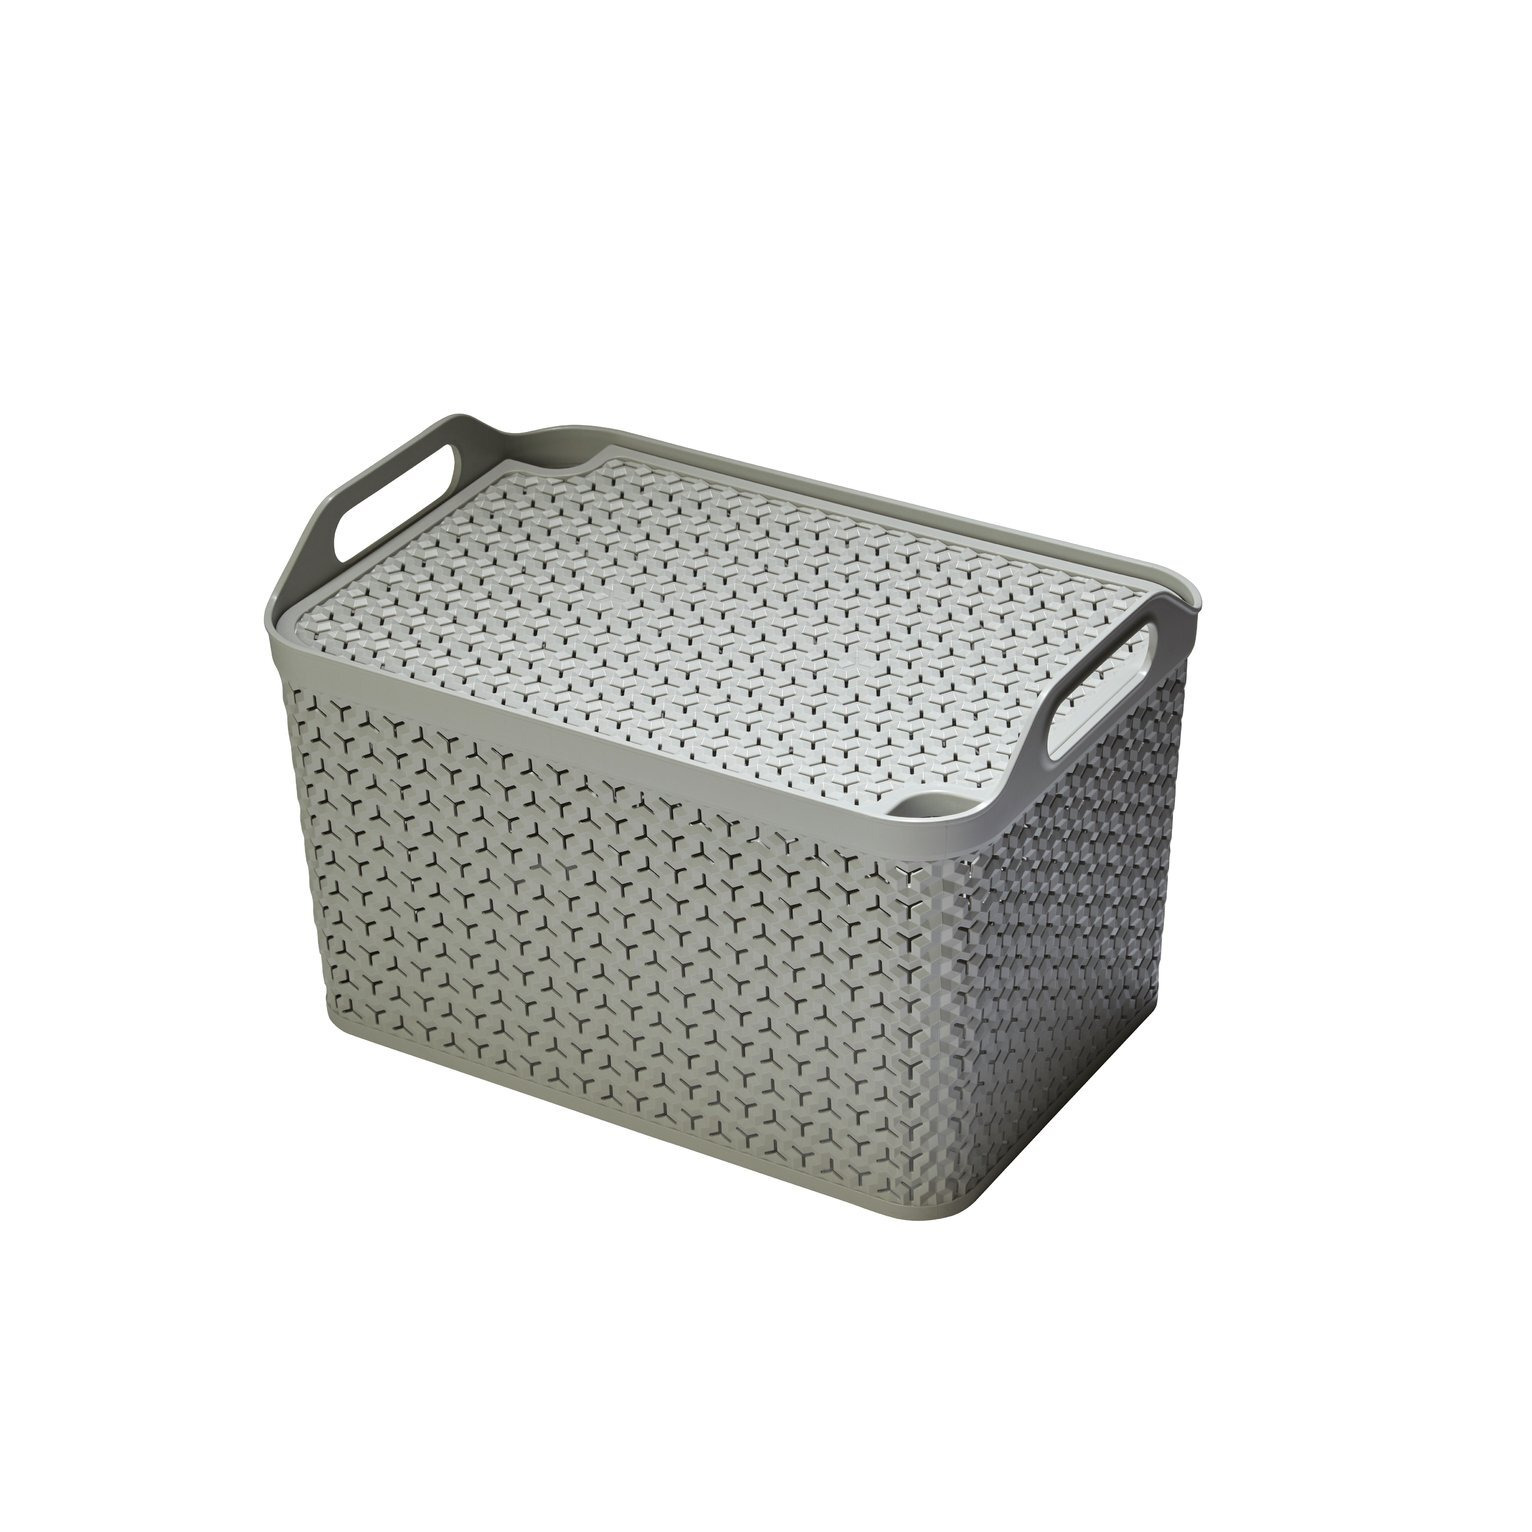 Strata Urban 3 x 21L Storage basket with Lid - Grey